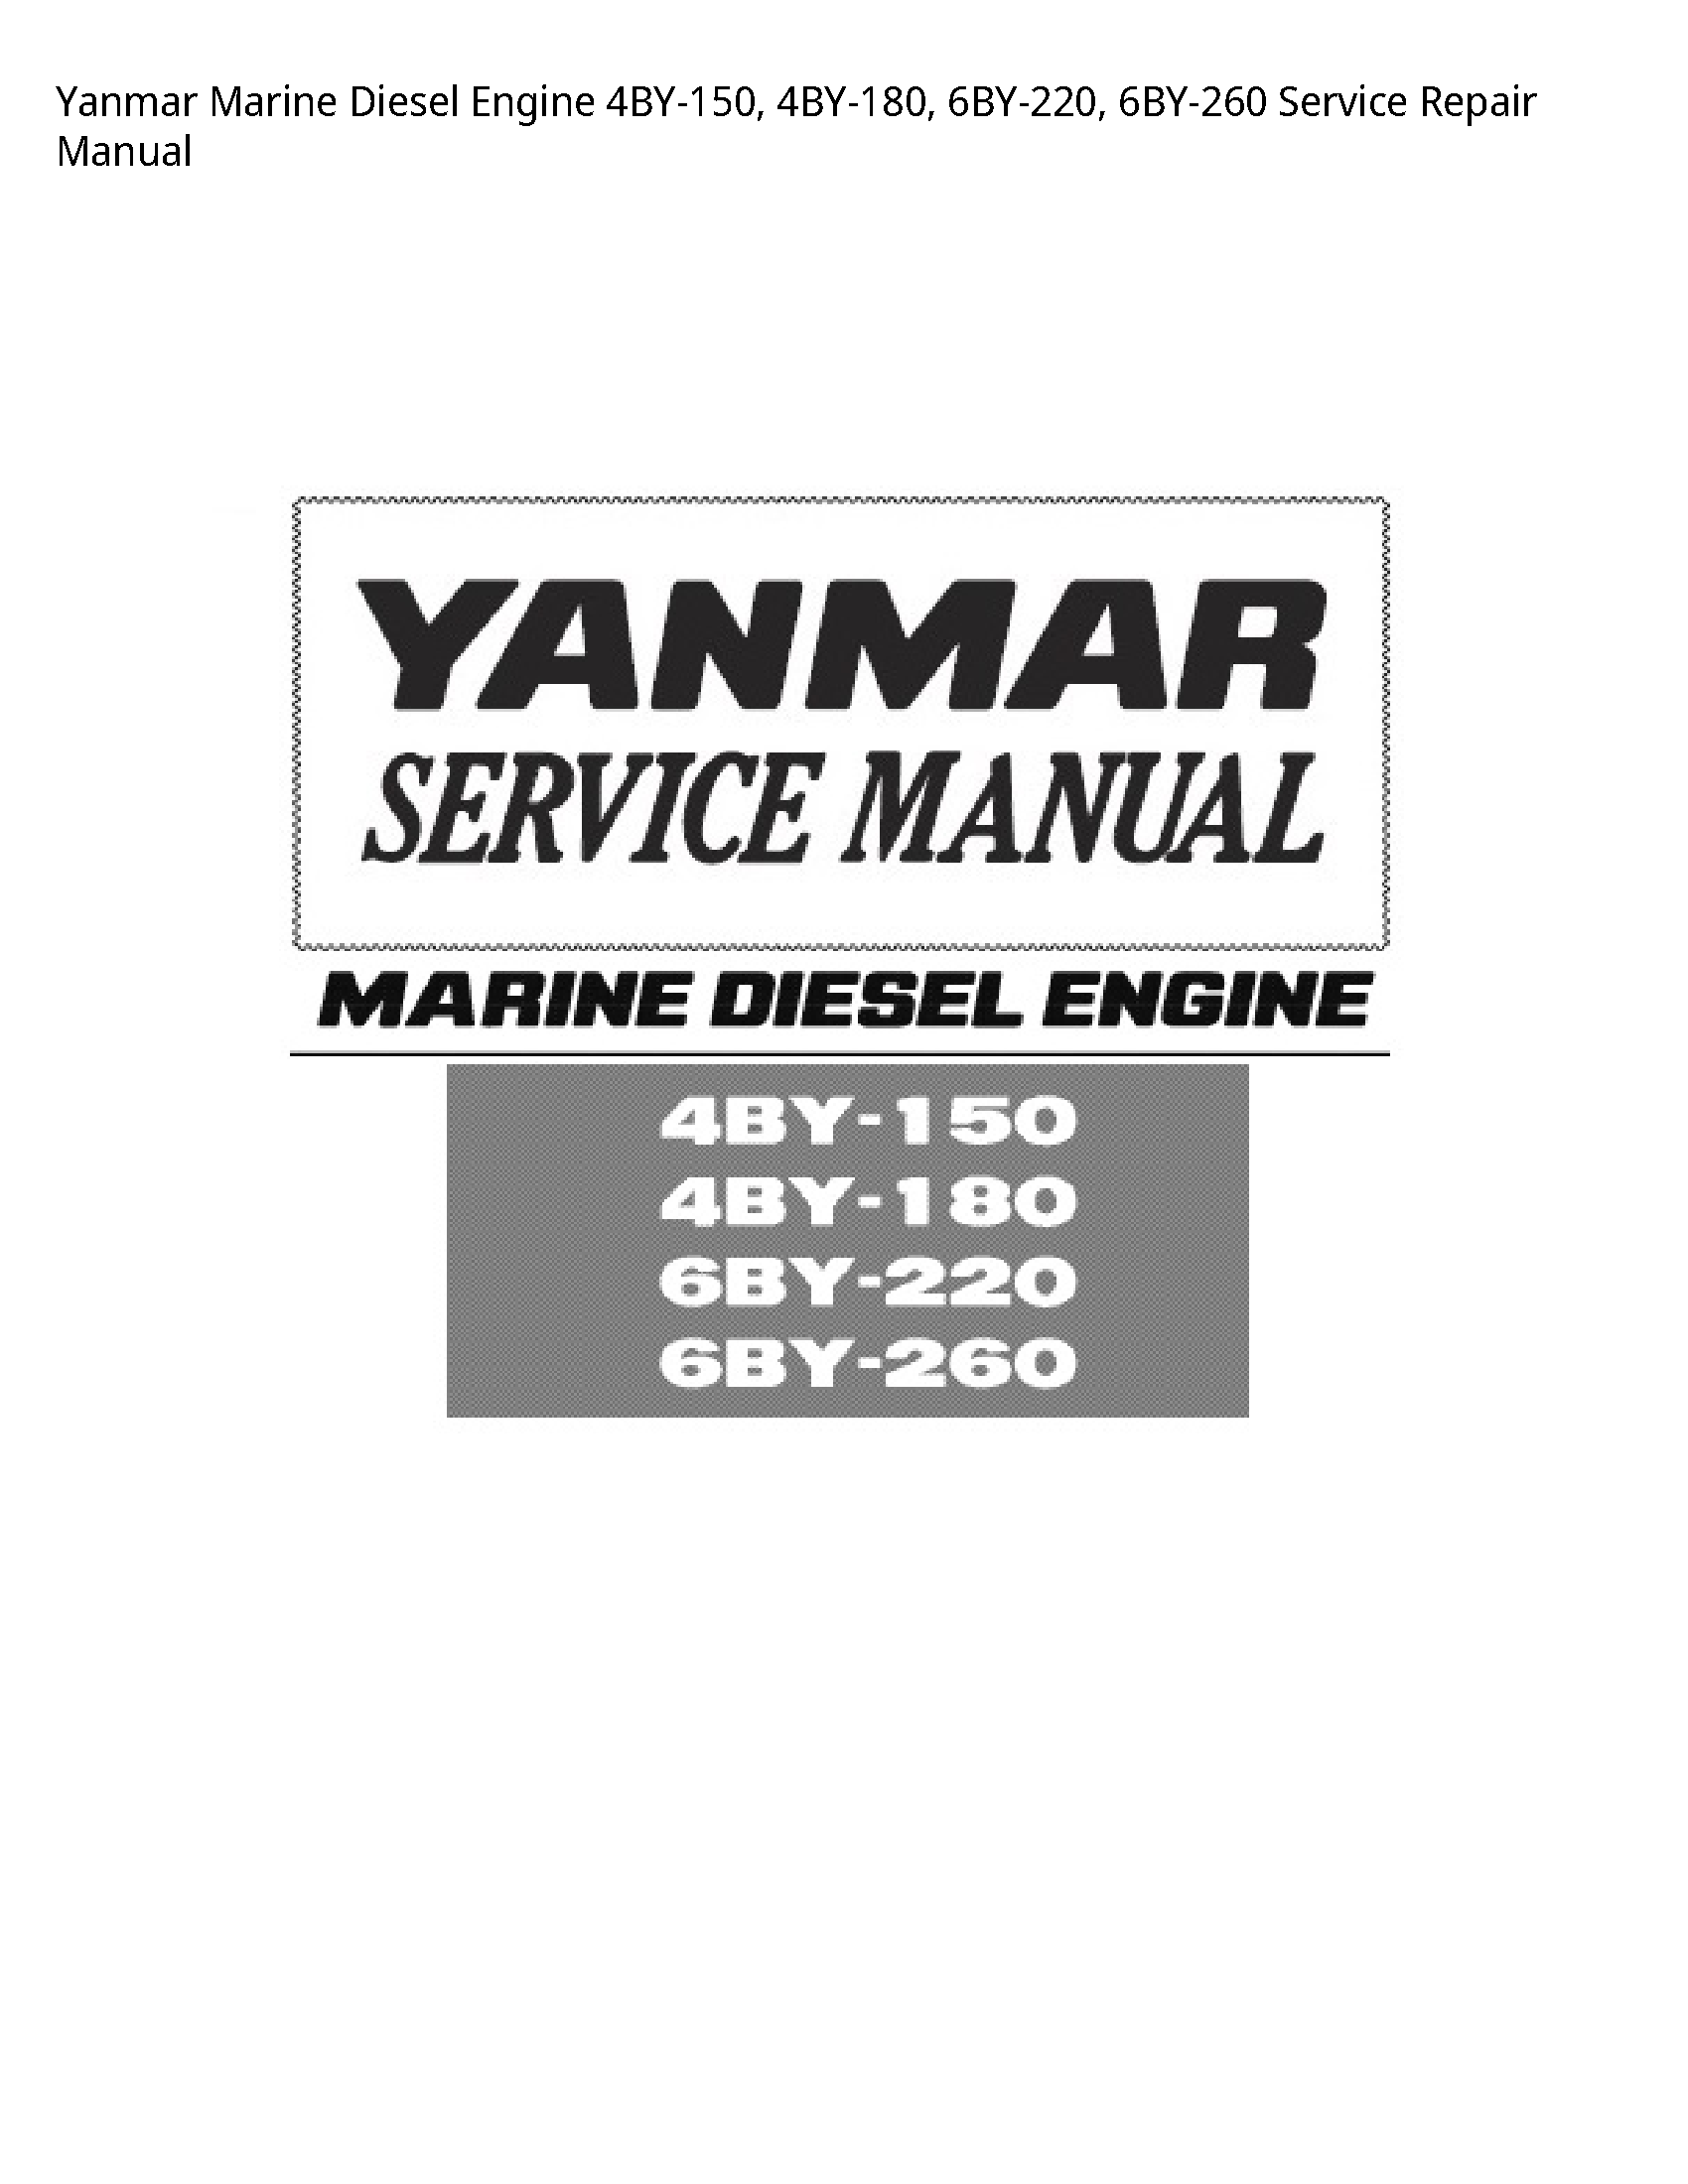 Yanmar 4BY-150 Marine Diesel Engine manual